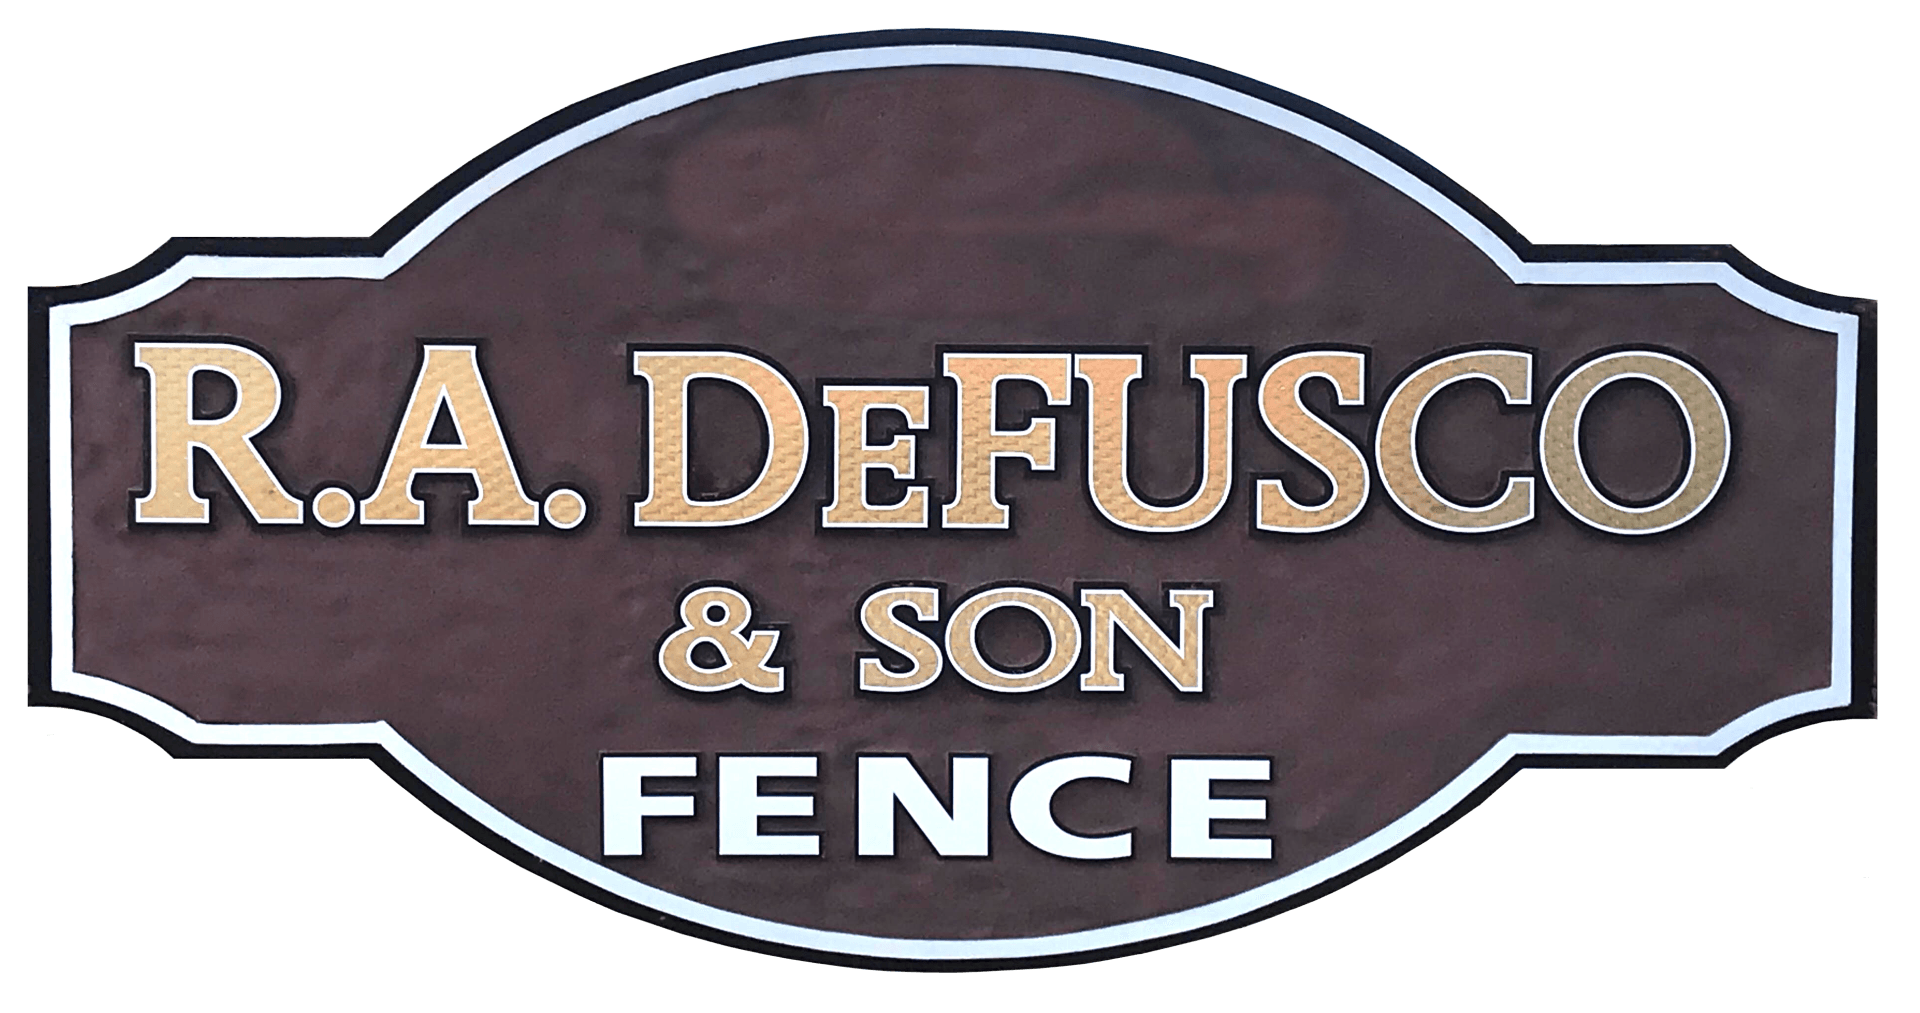 R. A. DeFUSCO & SON FENCE - Logo